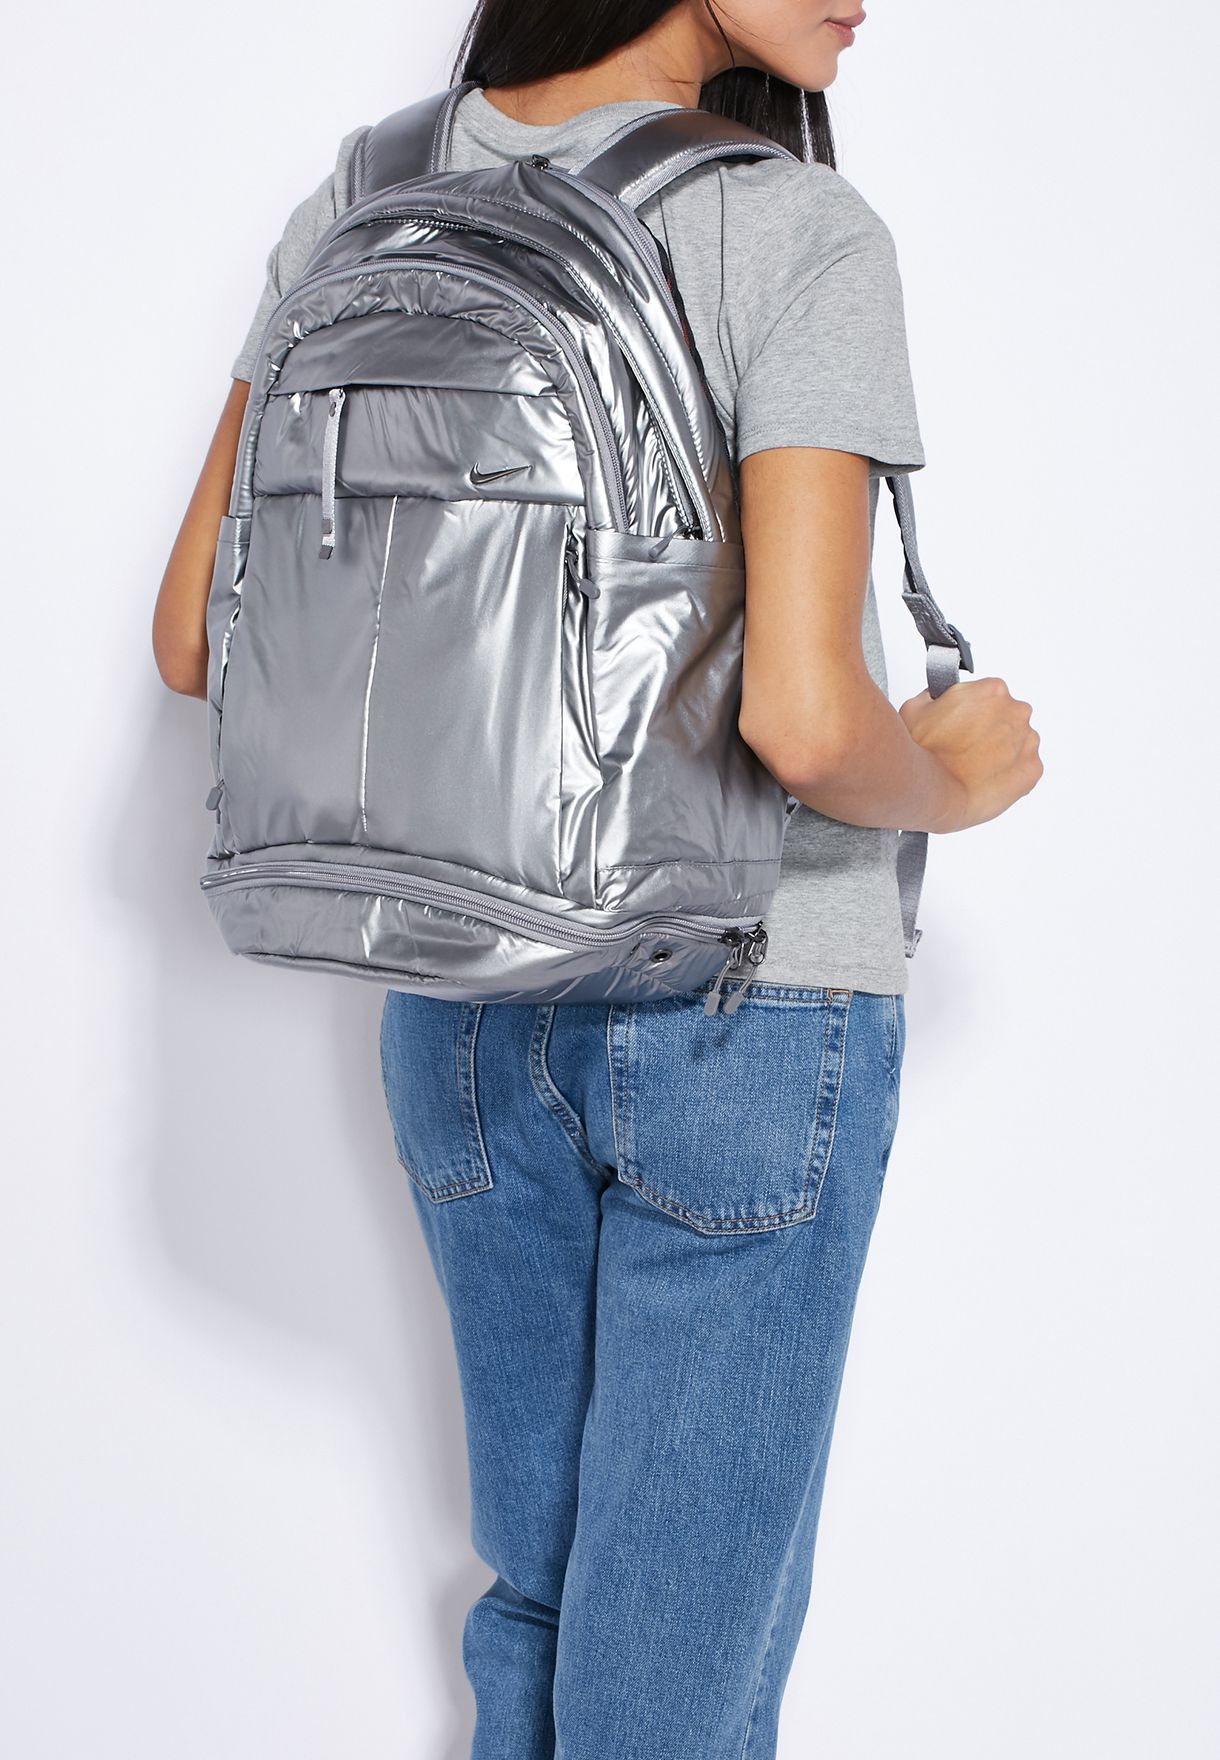 nike metallic backpack